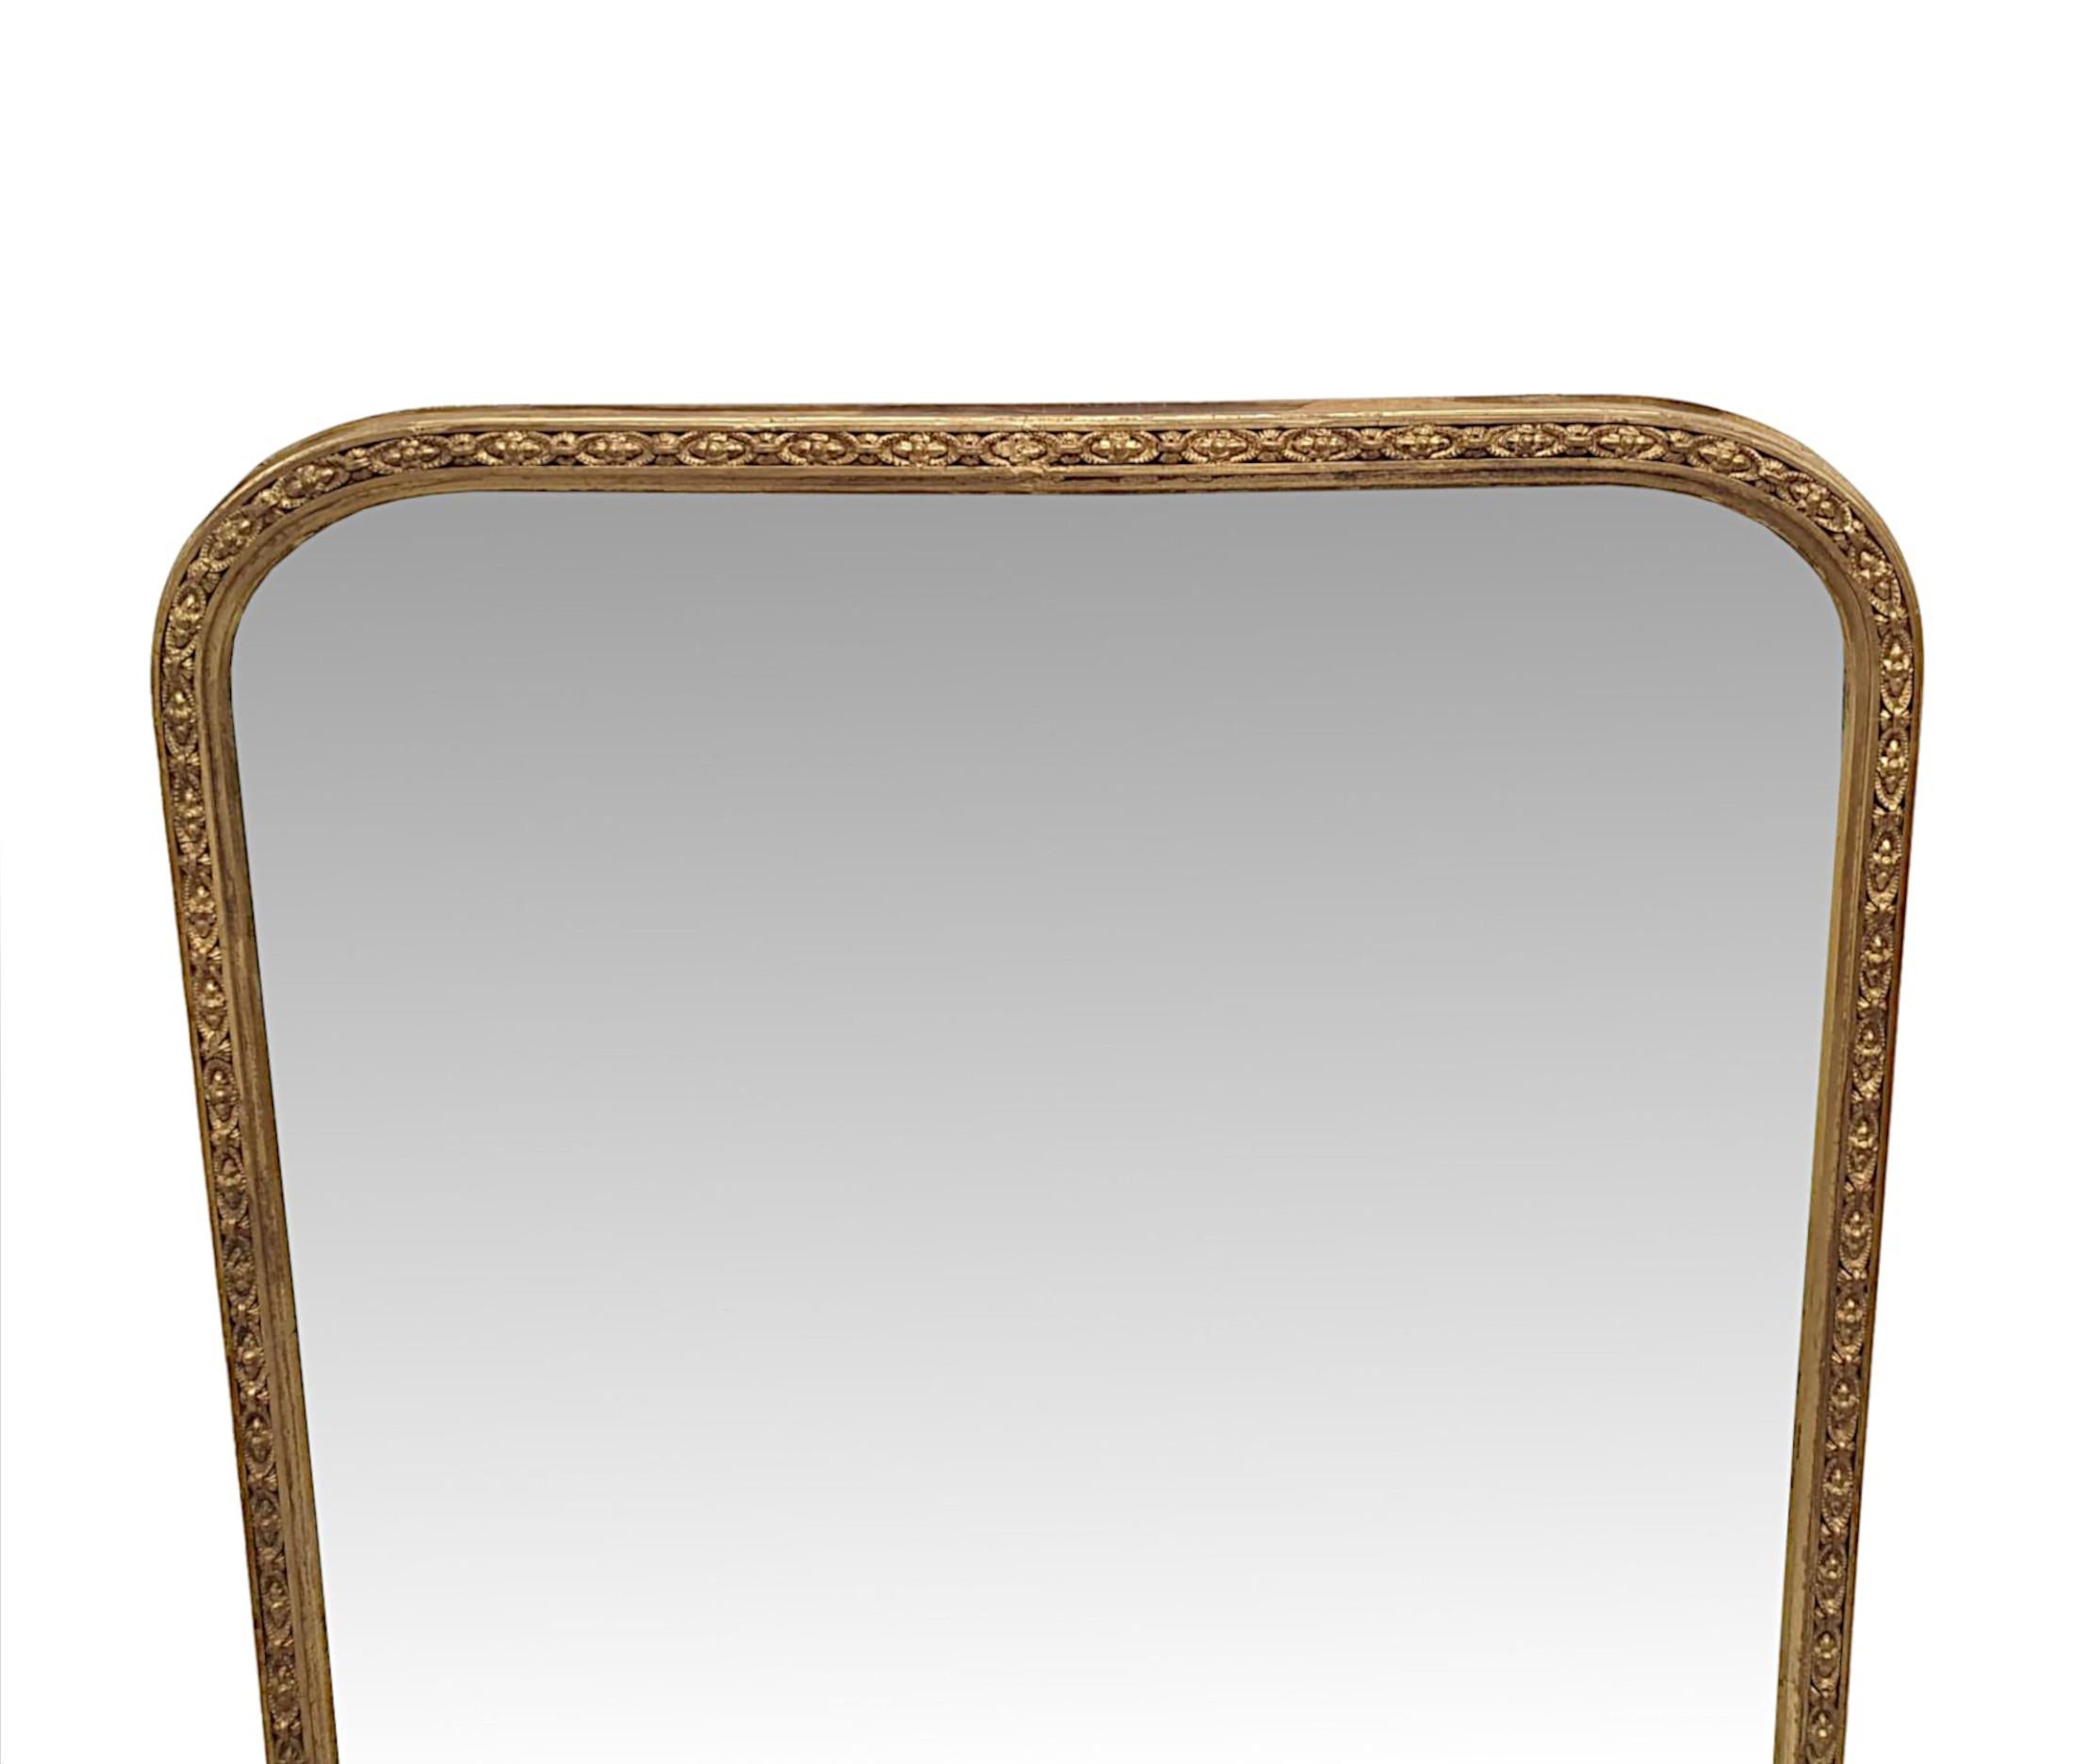 Eine wunderschöne 19. Jahrhundert vergoldet overmantle Spiegel fein von Hand geschnitzt und von fabelhafter Qualität.  Die ursprüngliche funkelnde Quecksilberspiegelglasplatte von rechteckiger Form mit geschwungenem Detail an der oberen Ecke kehrt